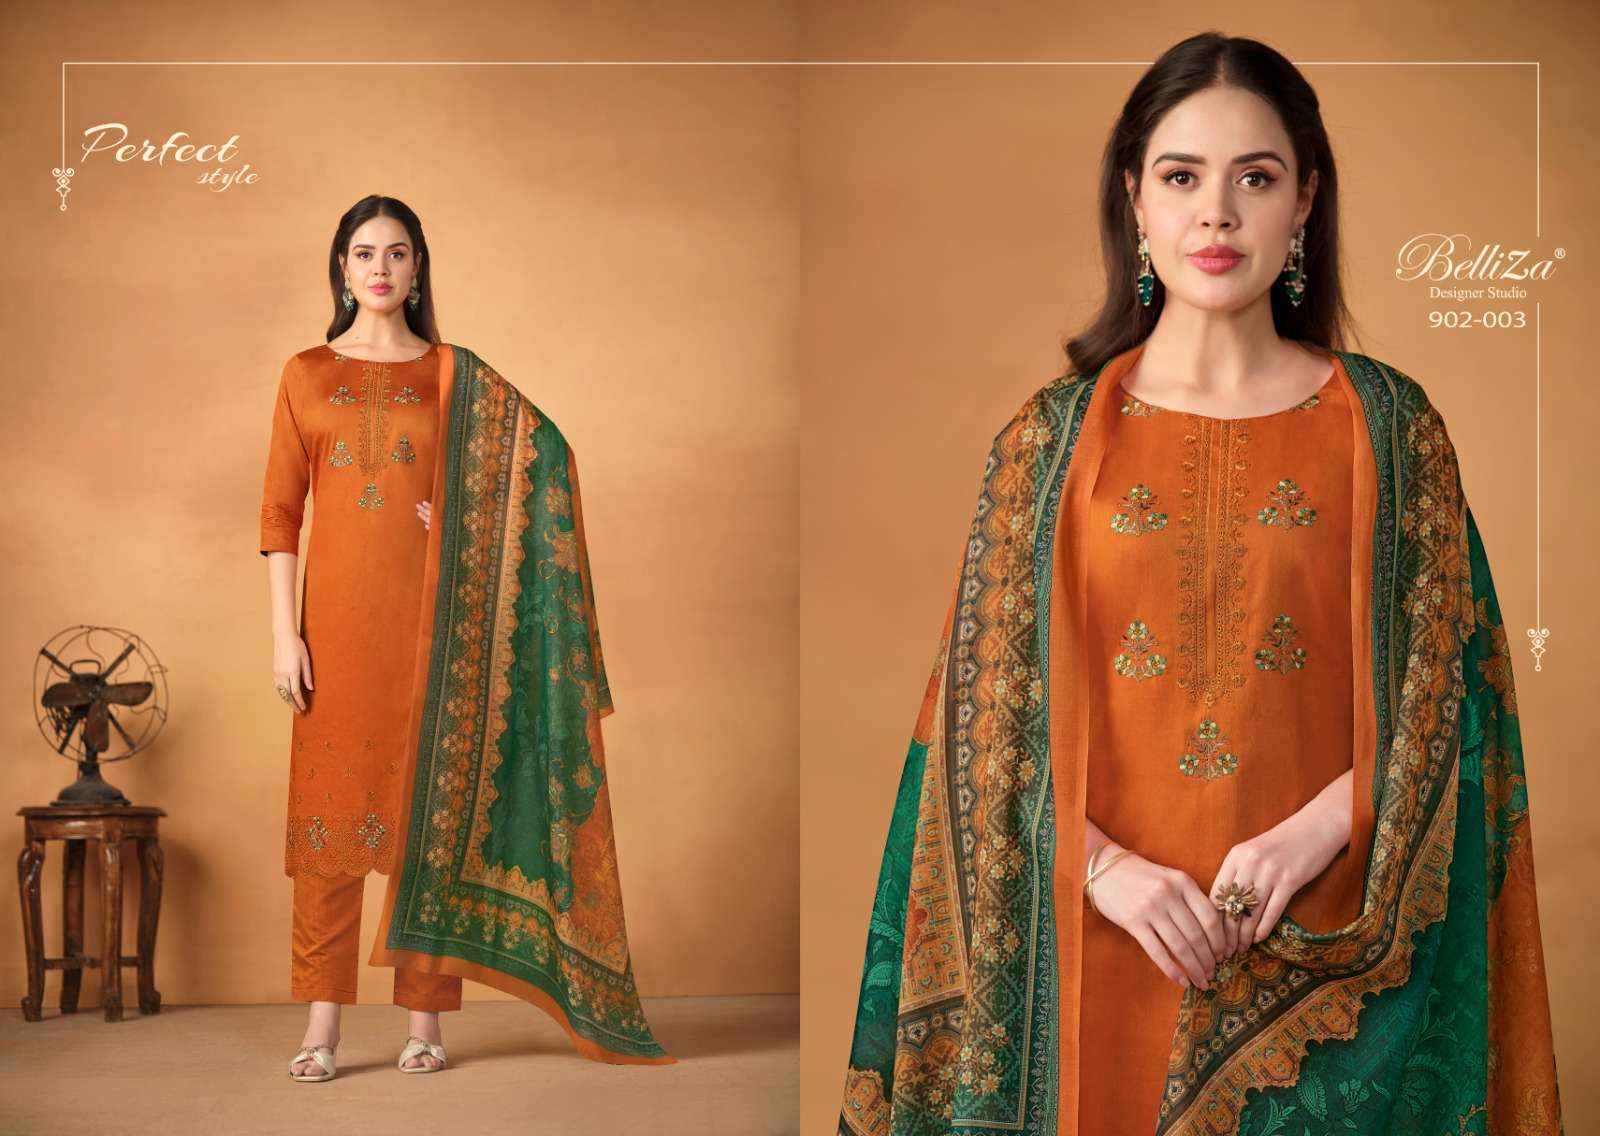 Belliza Jashn E Ishq Vol 5 Jam Cotton Dress Material 6 pcs Catalogue